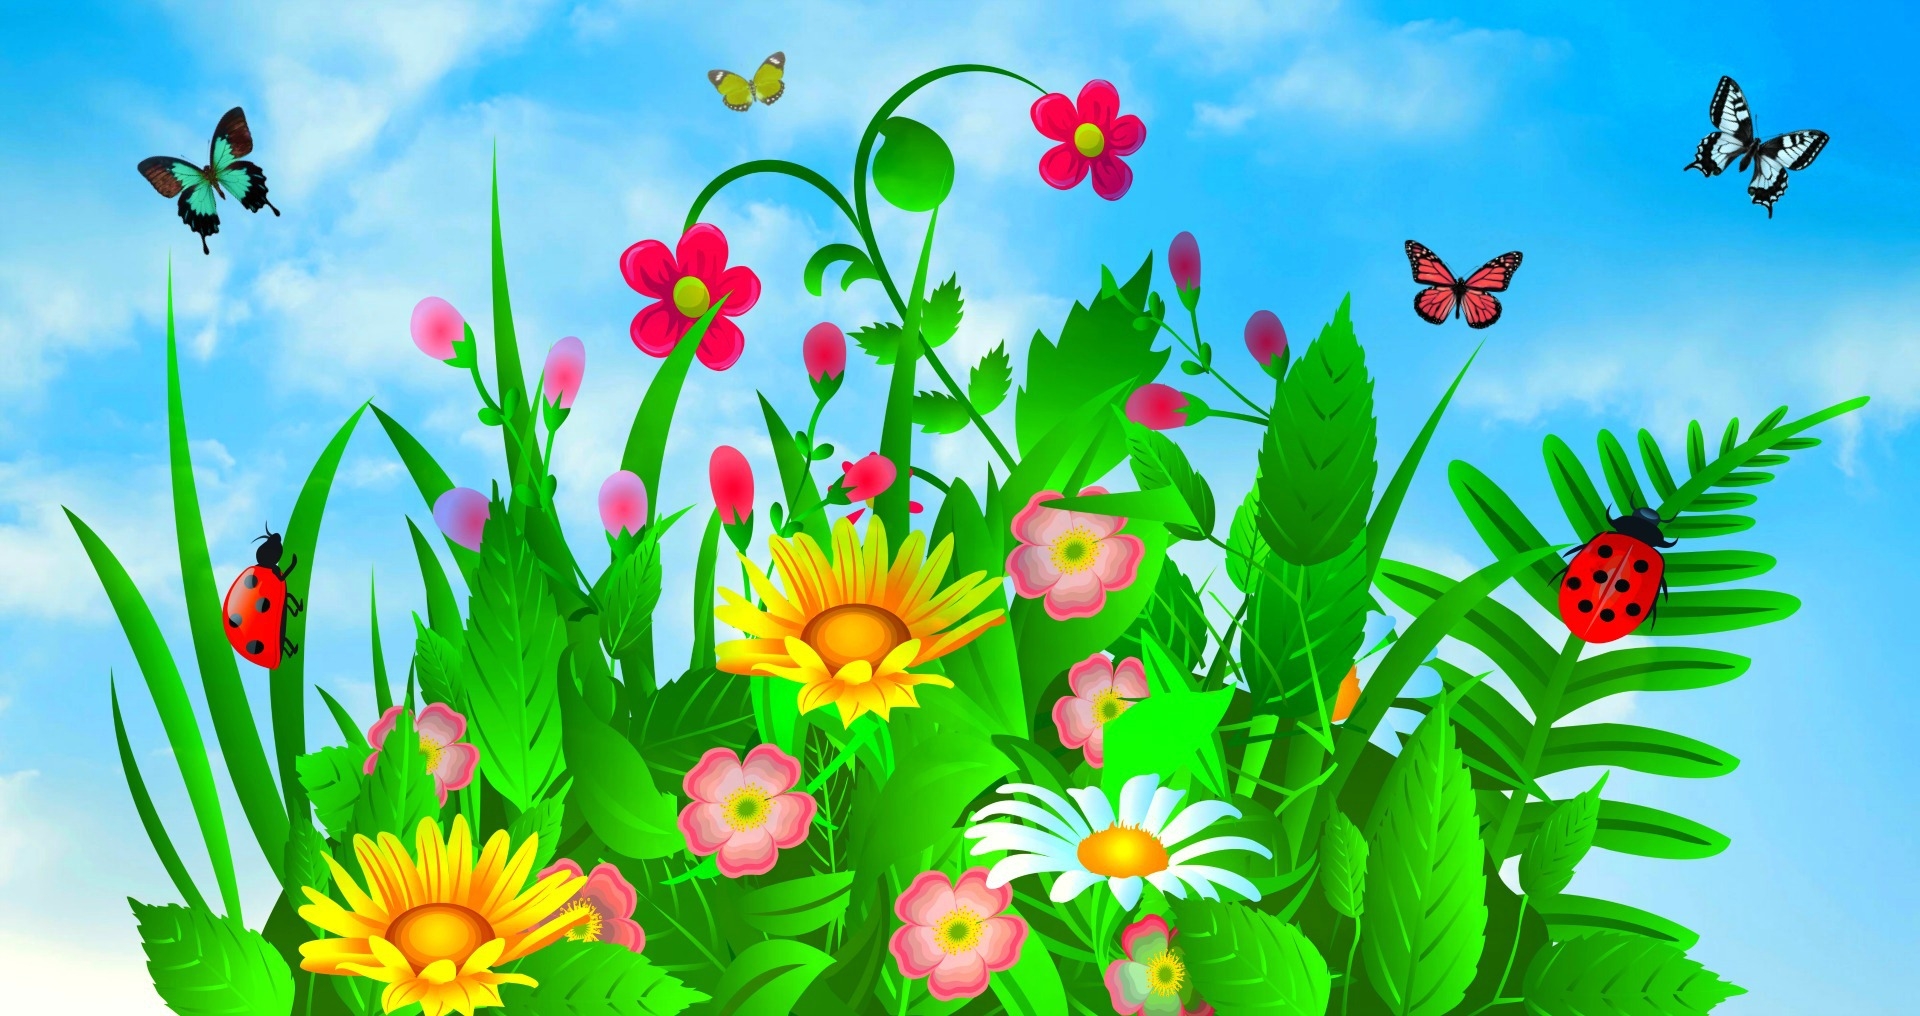 Descarga gratuita de fondo de pantalla para móvil de Flor, Planta, Hoja, Mariposa, Vistoso, Primavera, Artístico.